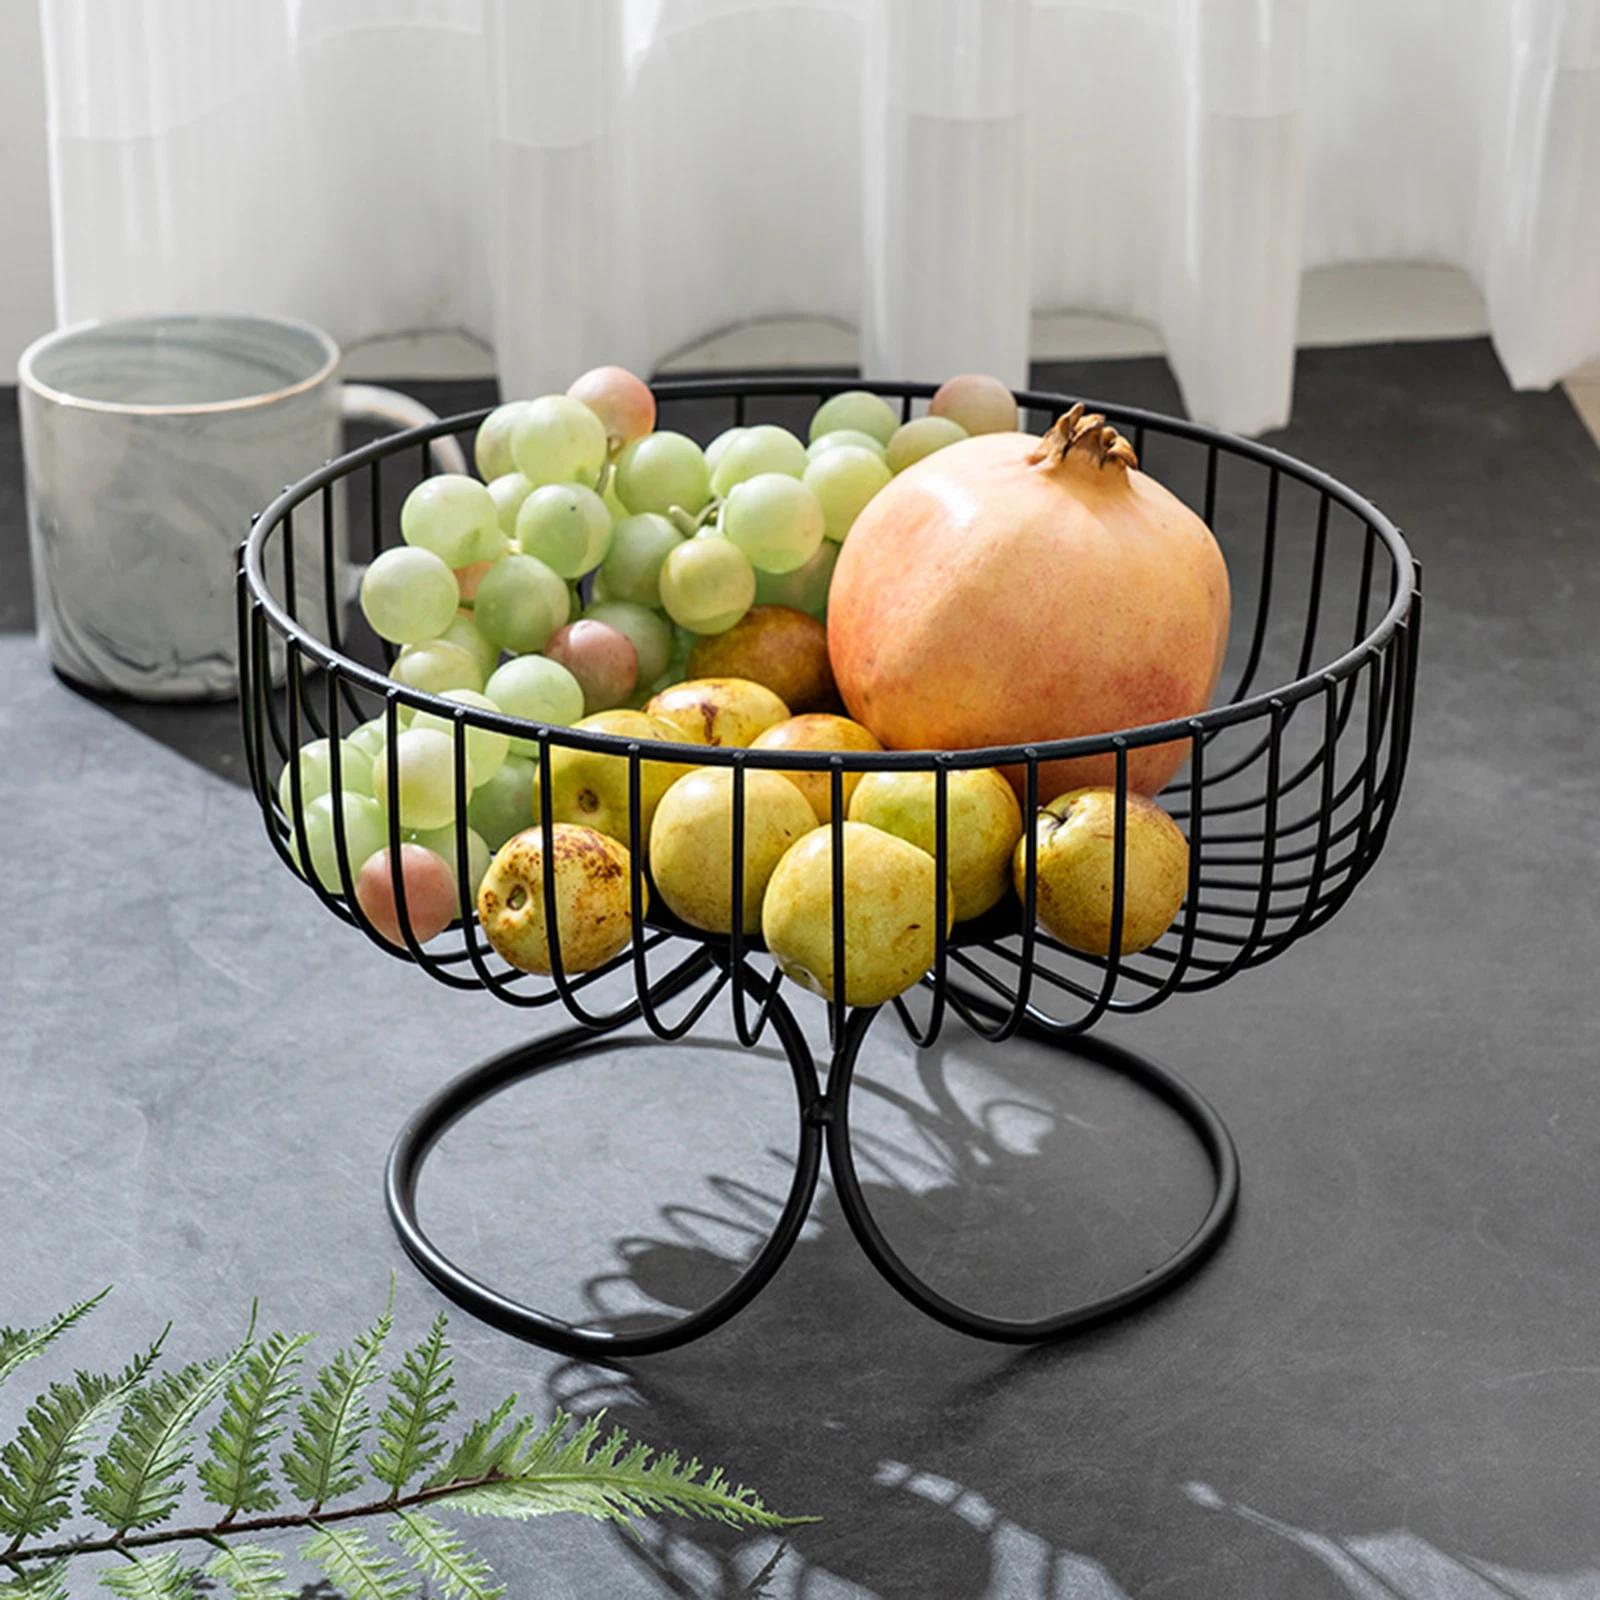 Fruit Holders, Fruit Bowls & Fruit Baskets